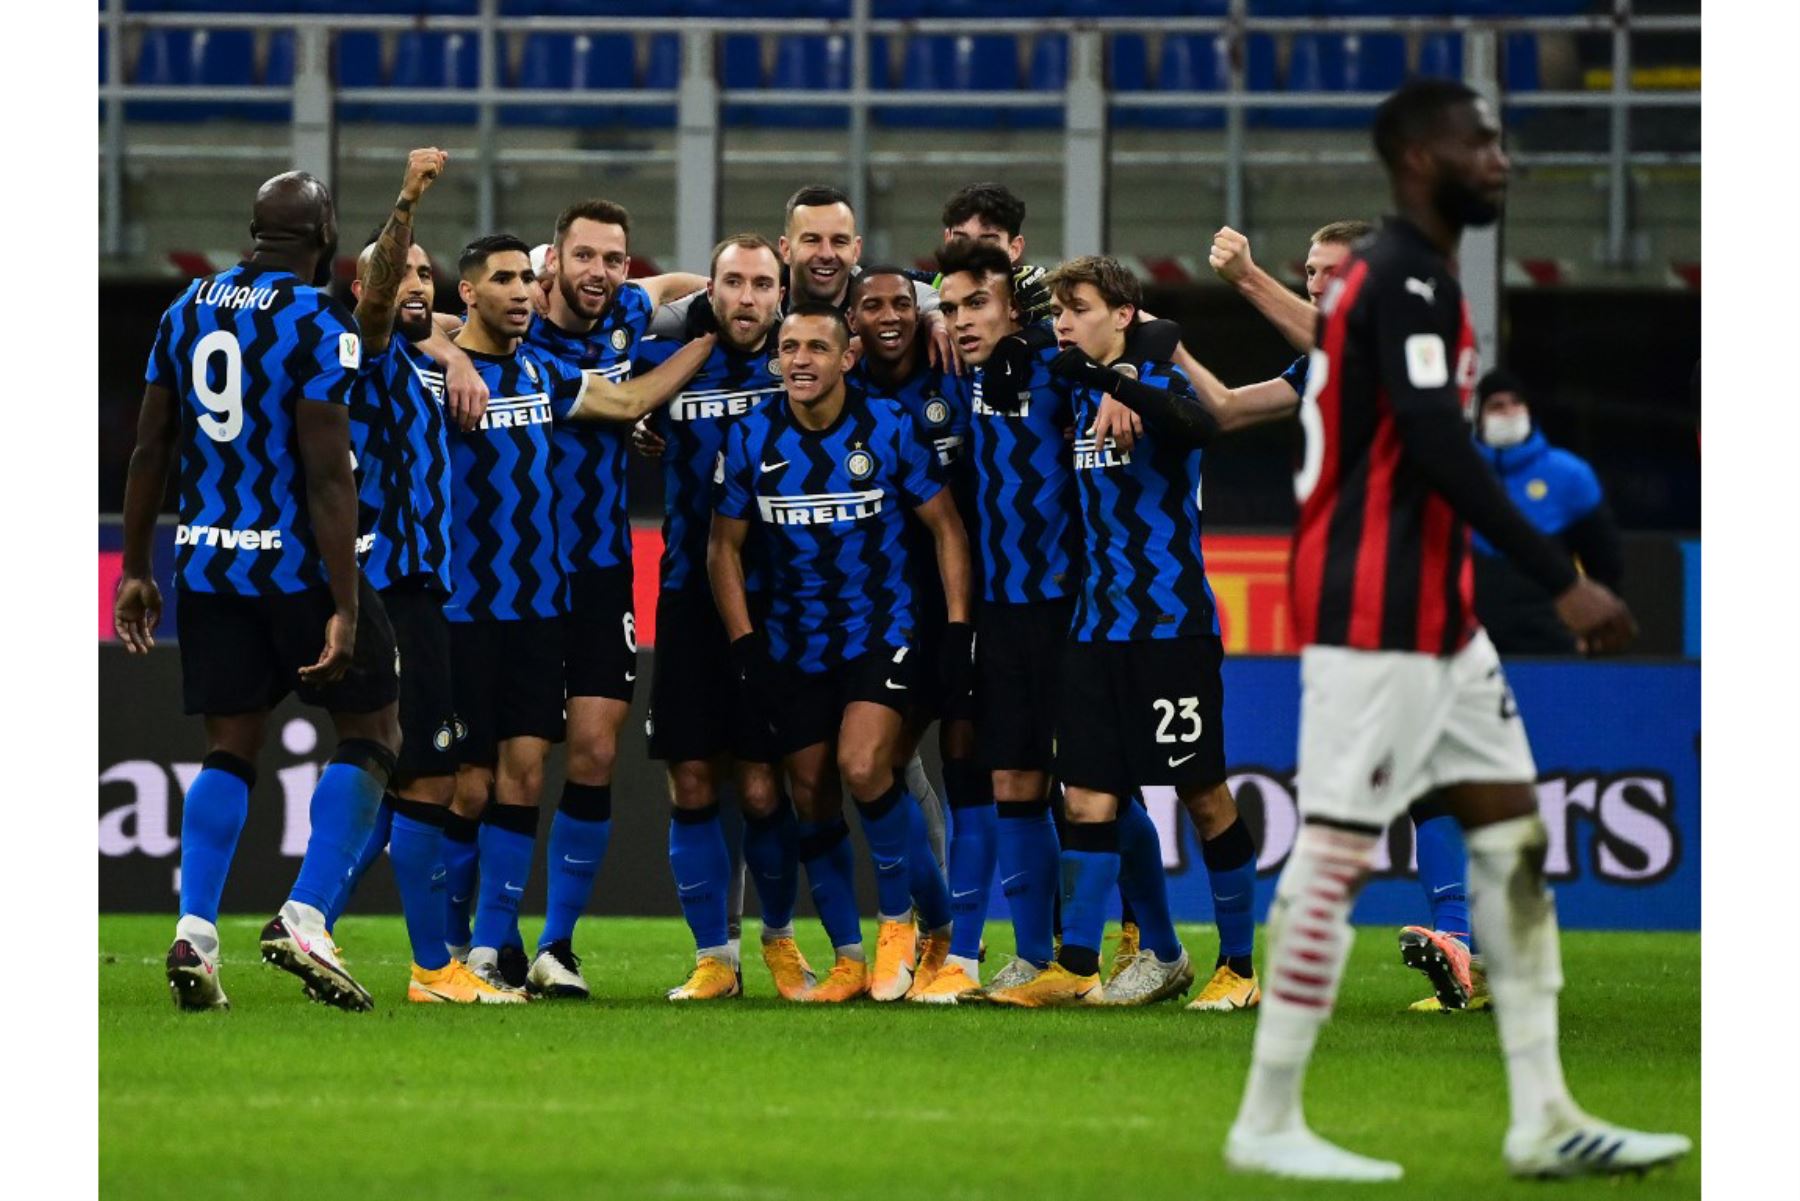 Los jugadores del Milan celebran después de que el centrocampista danés Christian Eriksen (C) anotara un tiro libre durante el partido de cuartos de final de la Copa de Italia entre el Inter de Milán y el AC Milan el 26 de enero de 2021 en el estadio Meazza de Milán. Foto: AFP